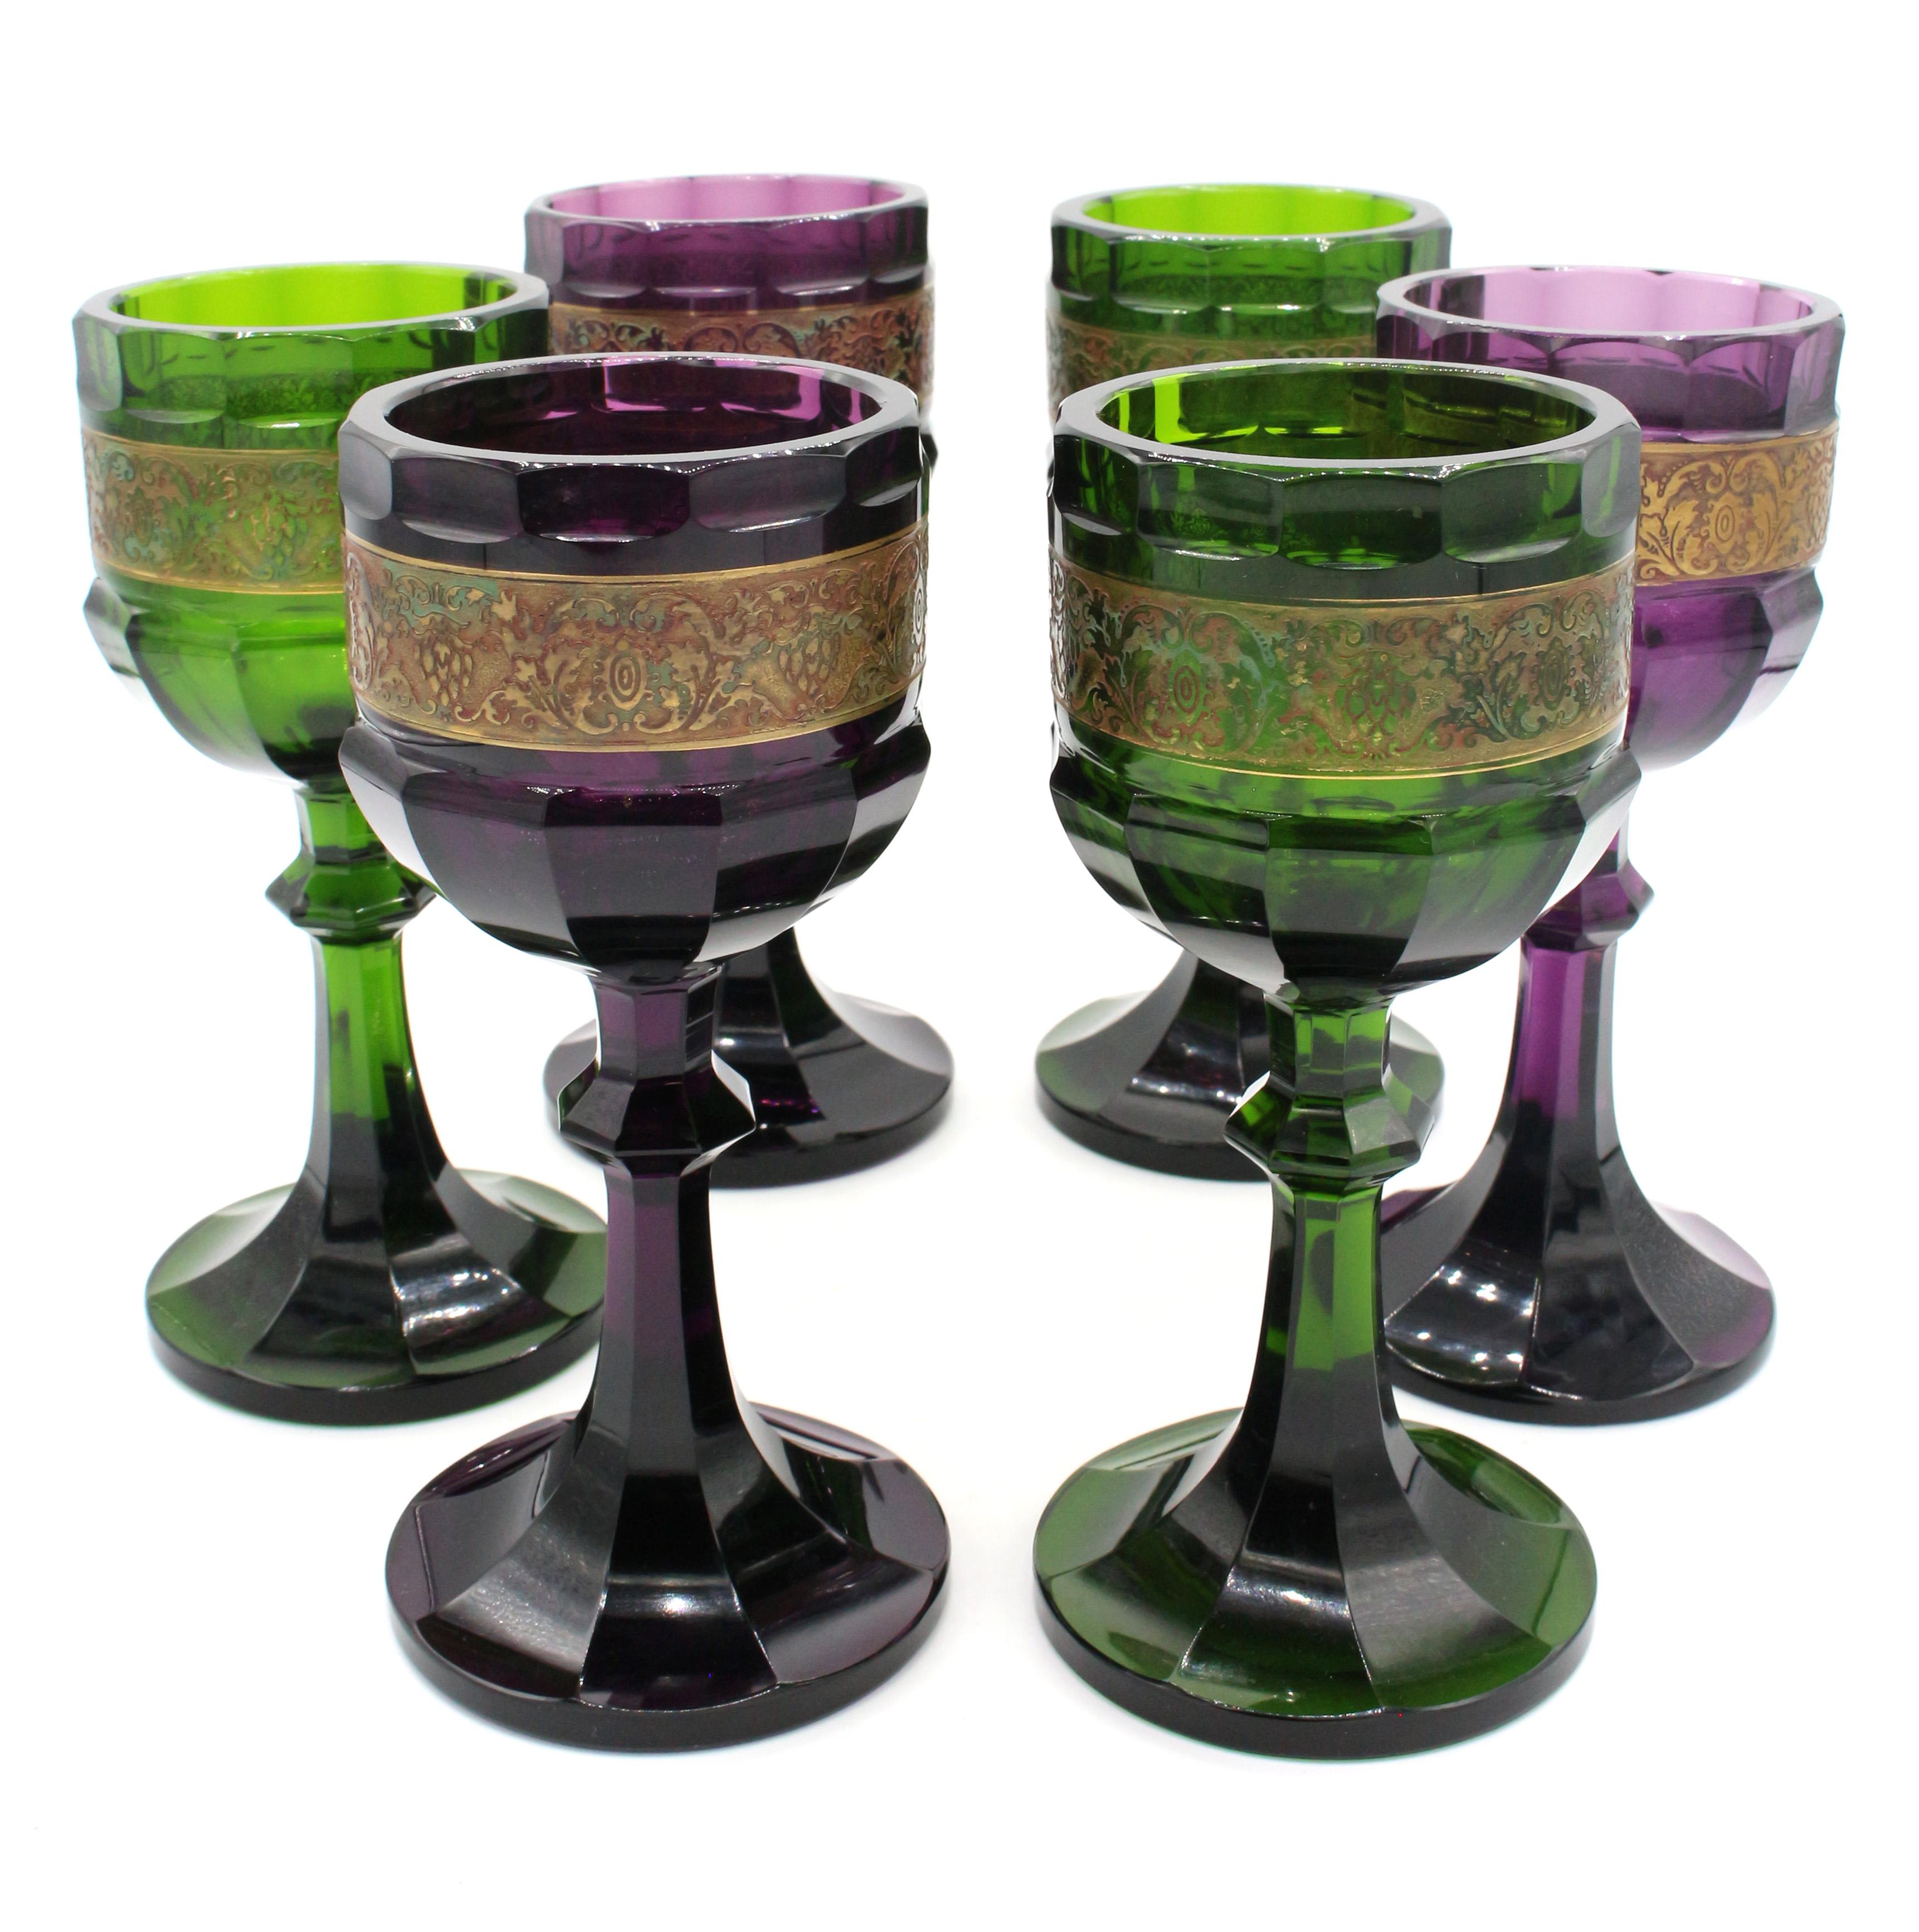 Satz von 6 Weißweinbechern von Moser, Karlsbad, Bohemia, Arts & Crafts Design, um 1920. 3(three) aus amethystfarbenem Glas und 3 aus smaragdgrünem Glas, jeweils mit aufwendig geätzten, vergoldeten Bändern aus Traubengirlanden, die als 